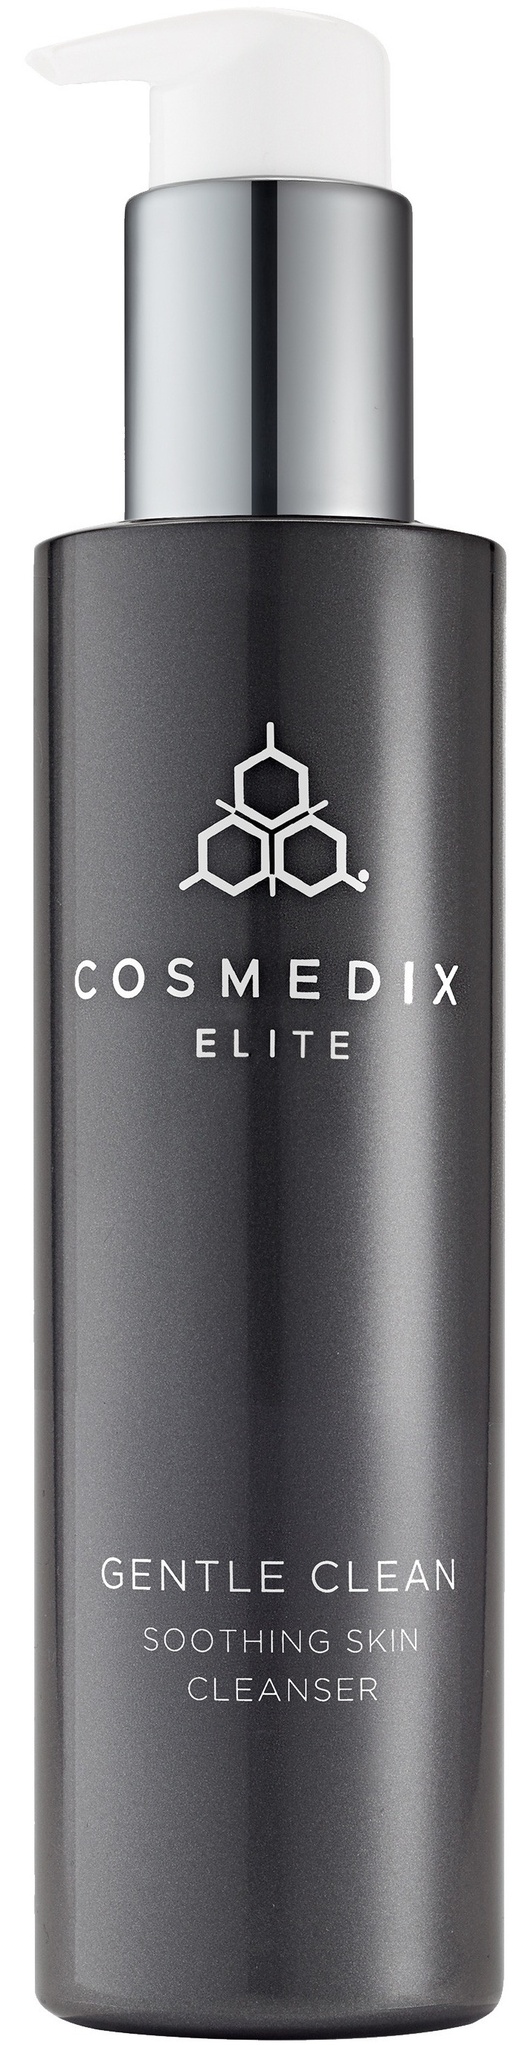 Cosmedix Elite Gentle Clean